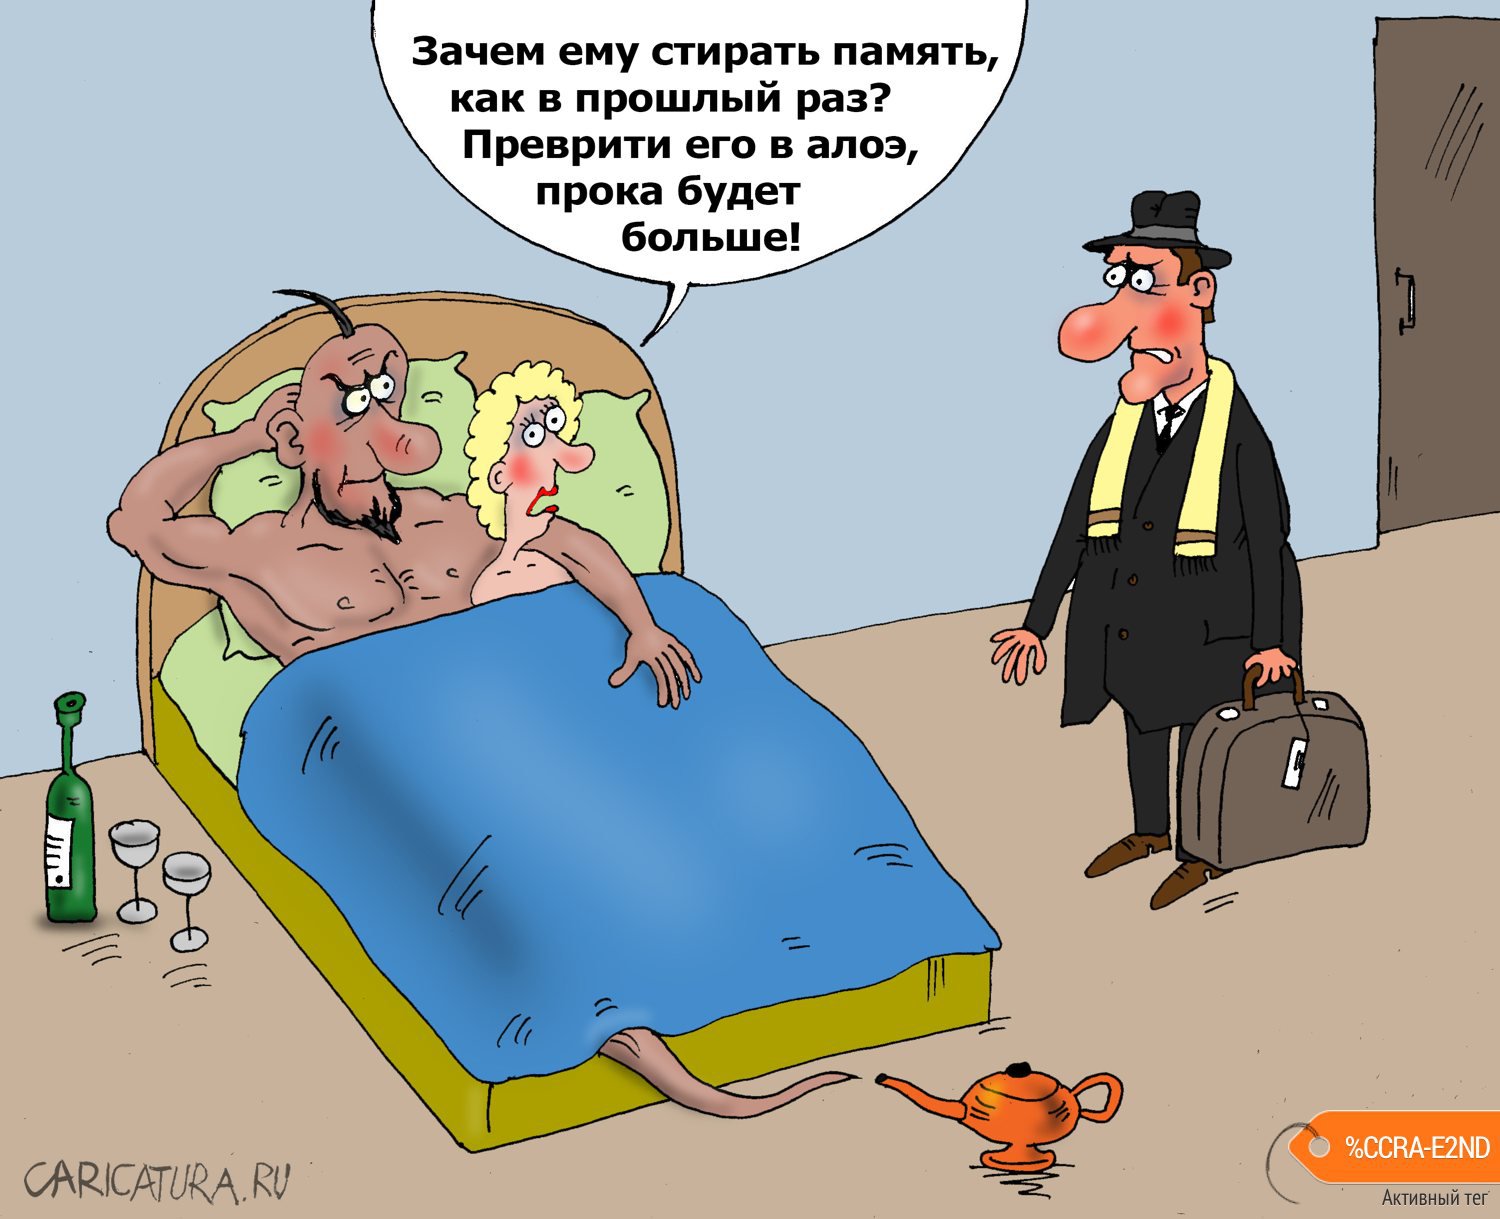 Карикатура "Джин-любовник", Валерий Тарасенко